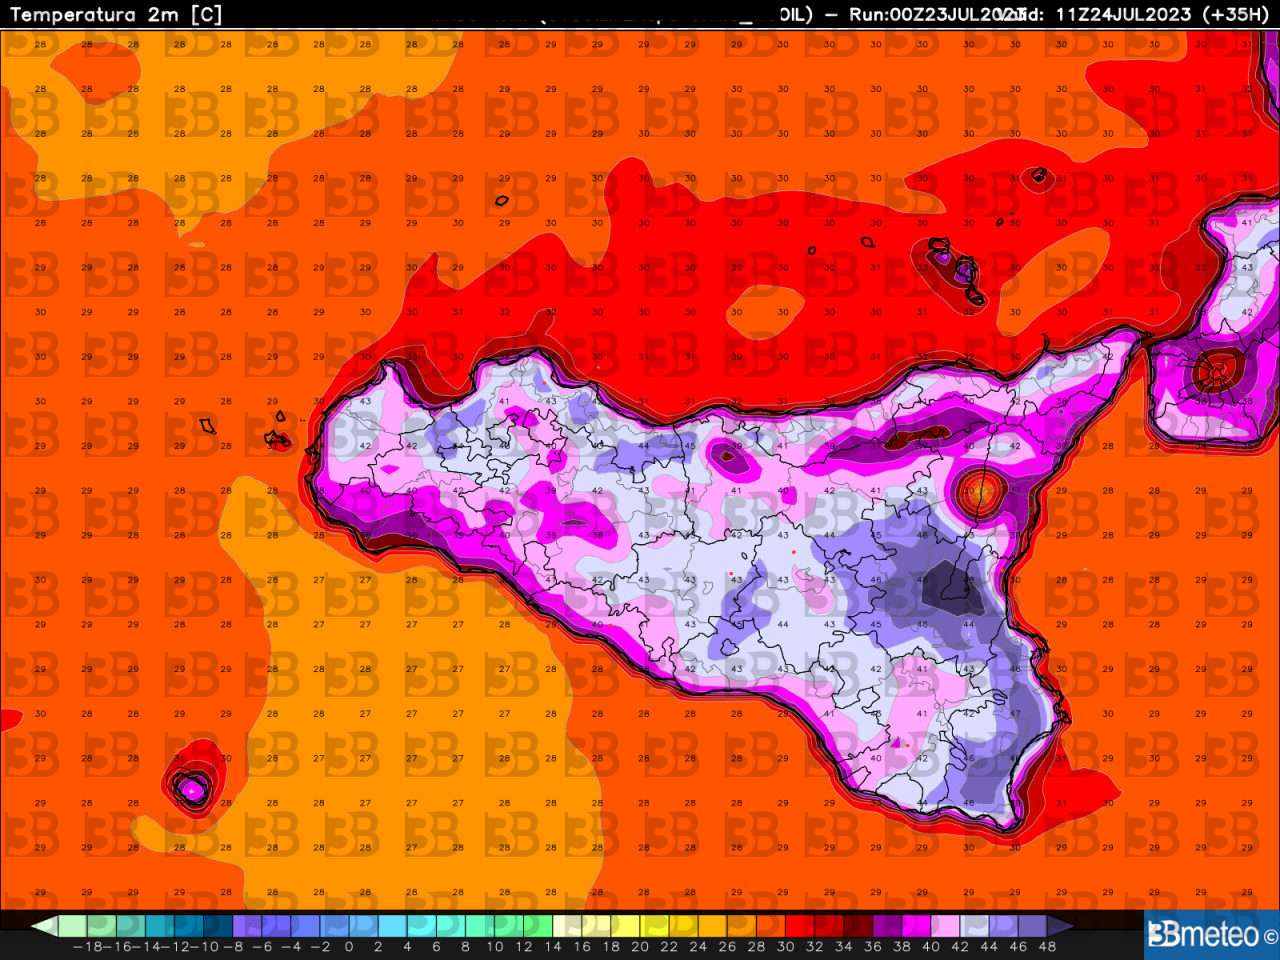 Le temperature massime simulate dal modello numerico di 3bmeteo.com nel pomeriggio di lunedì 24 luglio